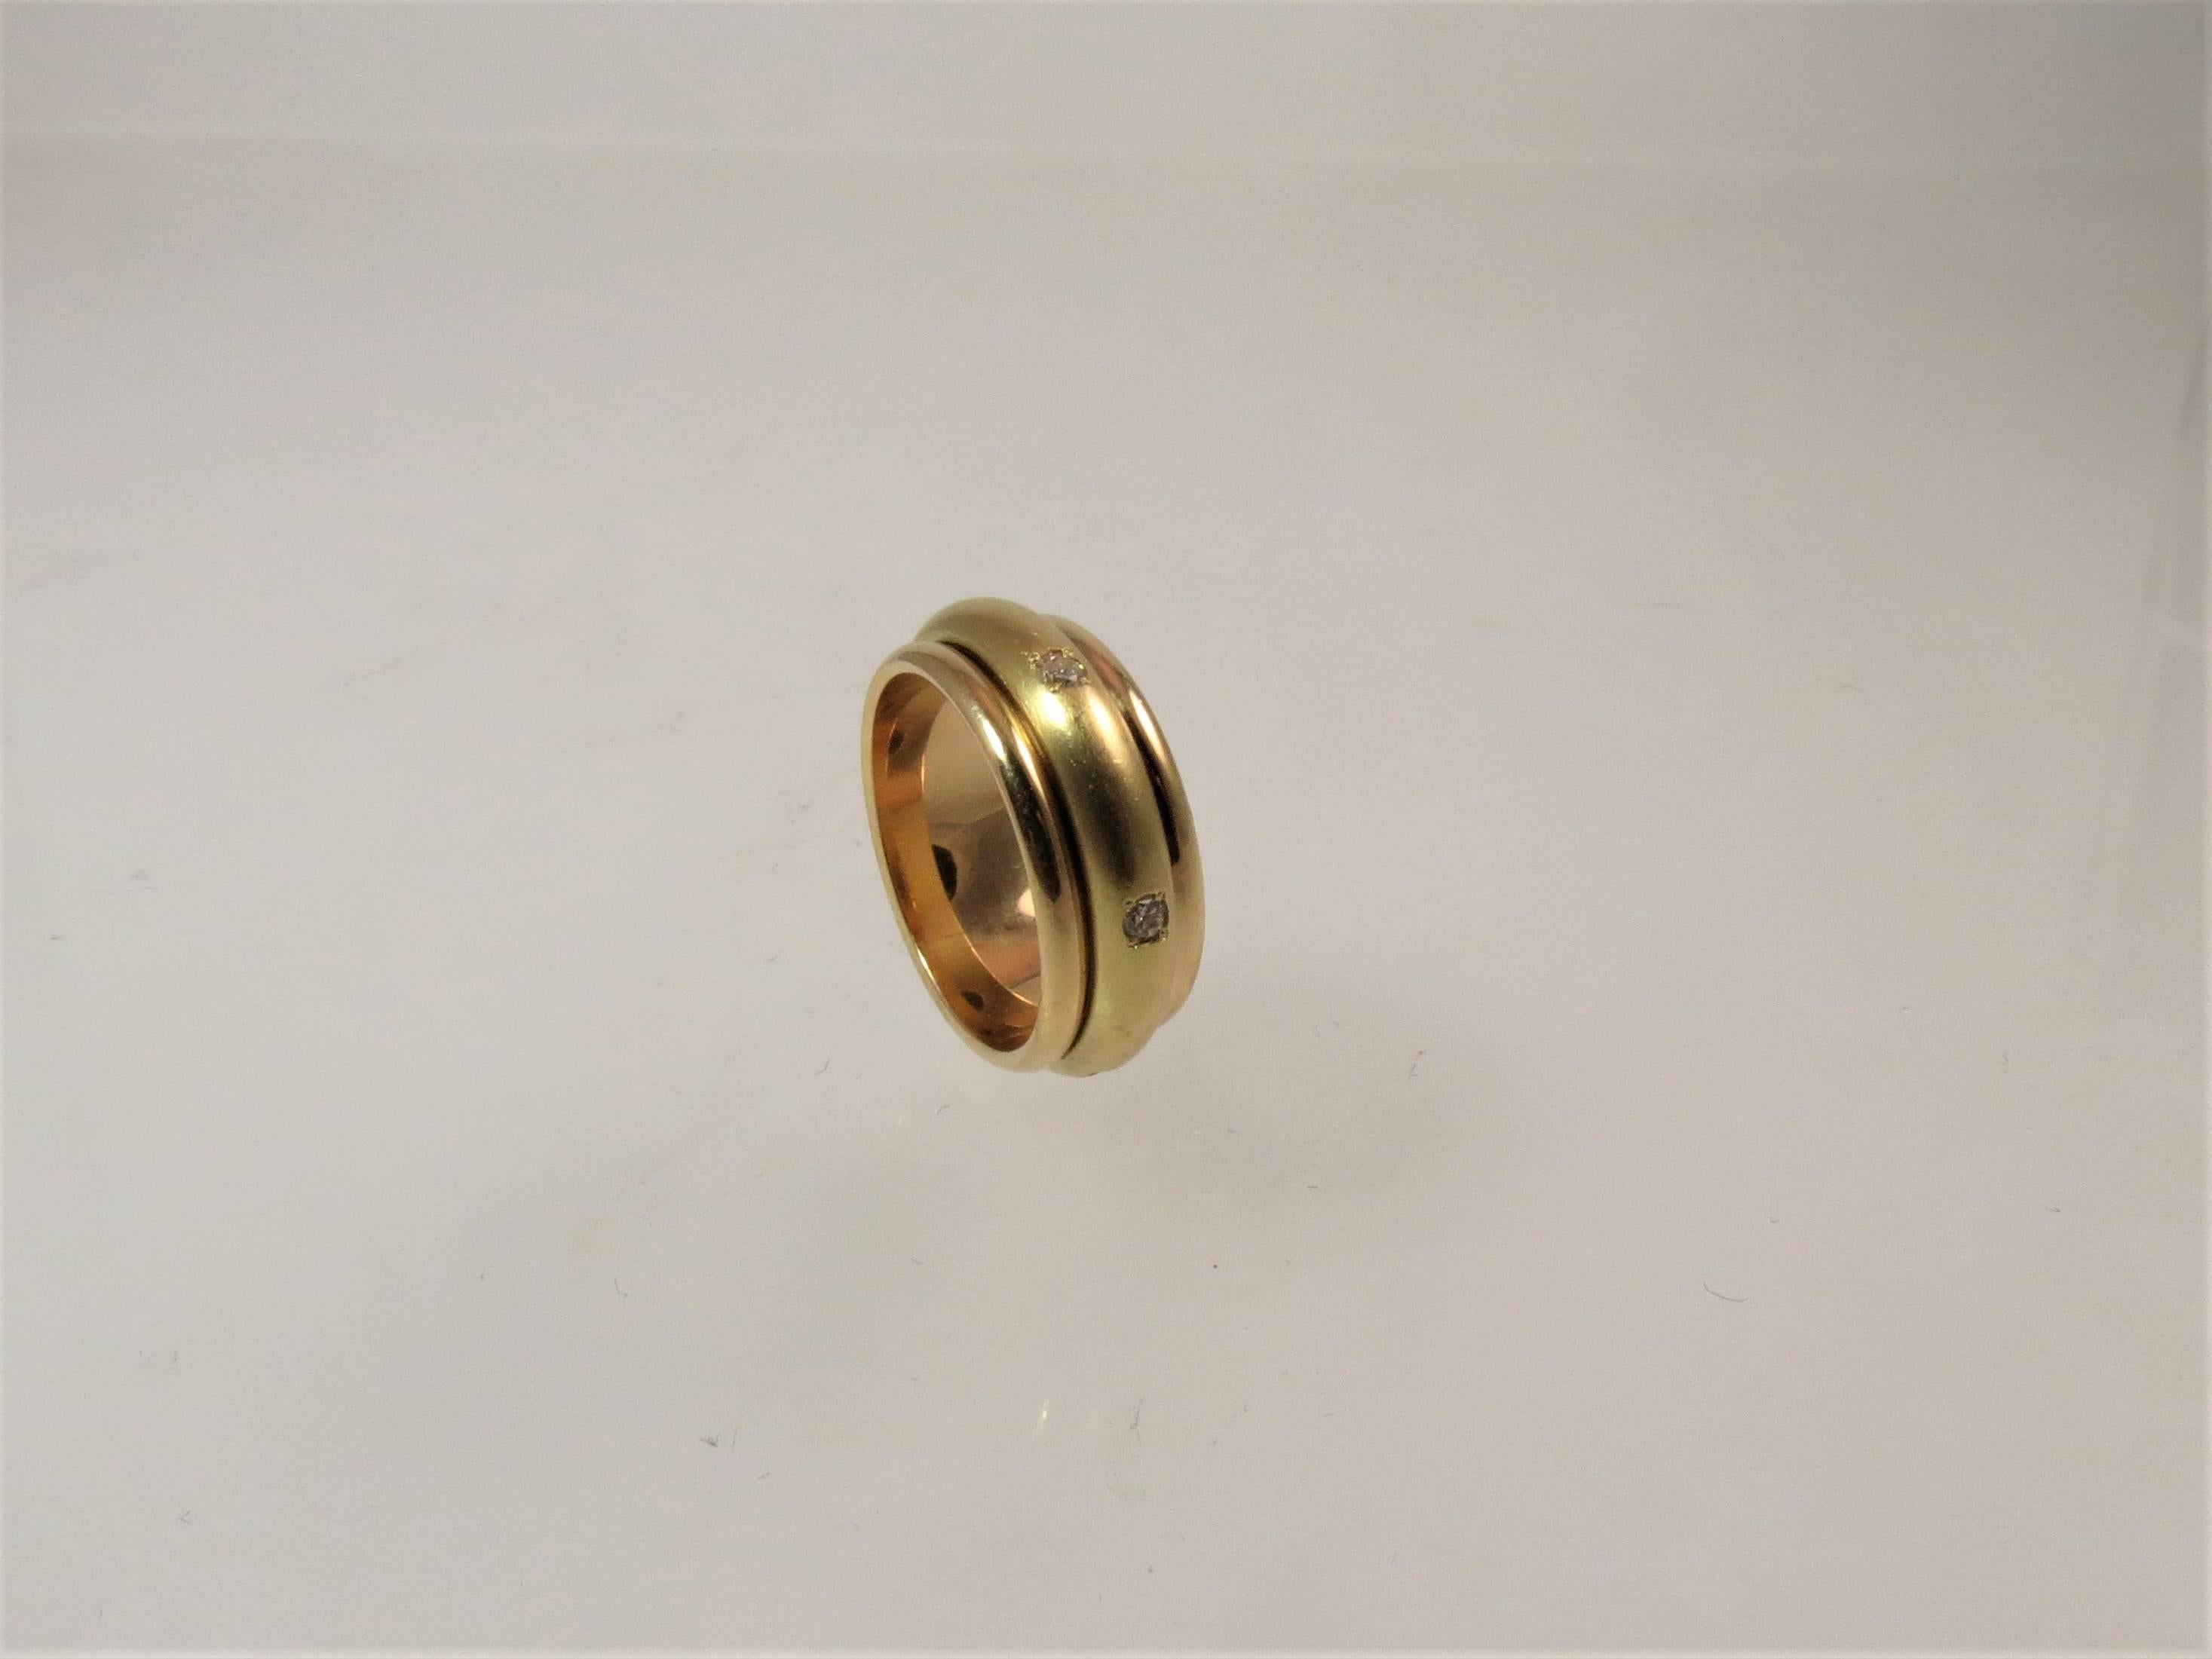 bague à anneau en or jaune 18K avec anneau central en diamant, serti de 6 diamants ronds pleine taille pesant .24cts, largeur 8mm.
Taille 7.25